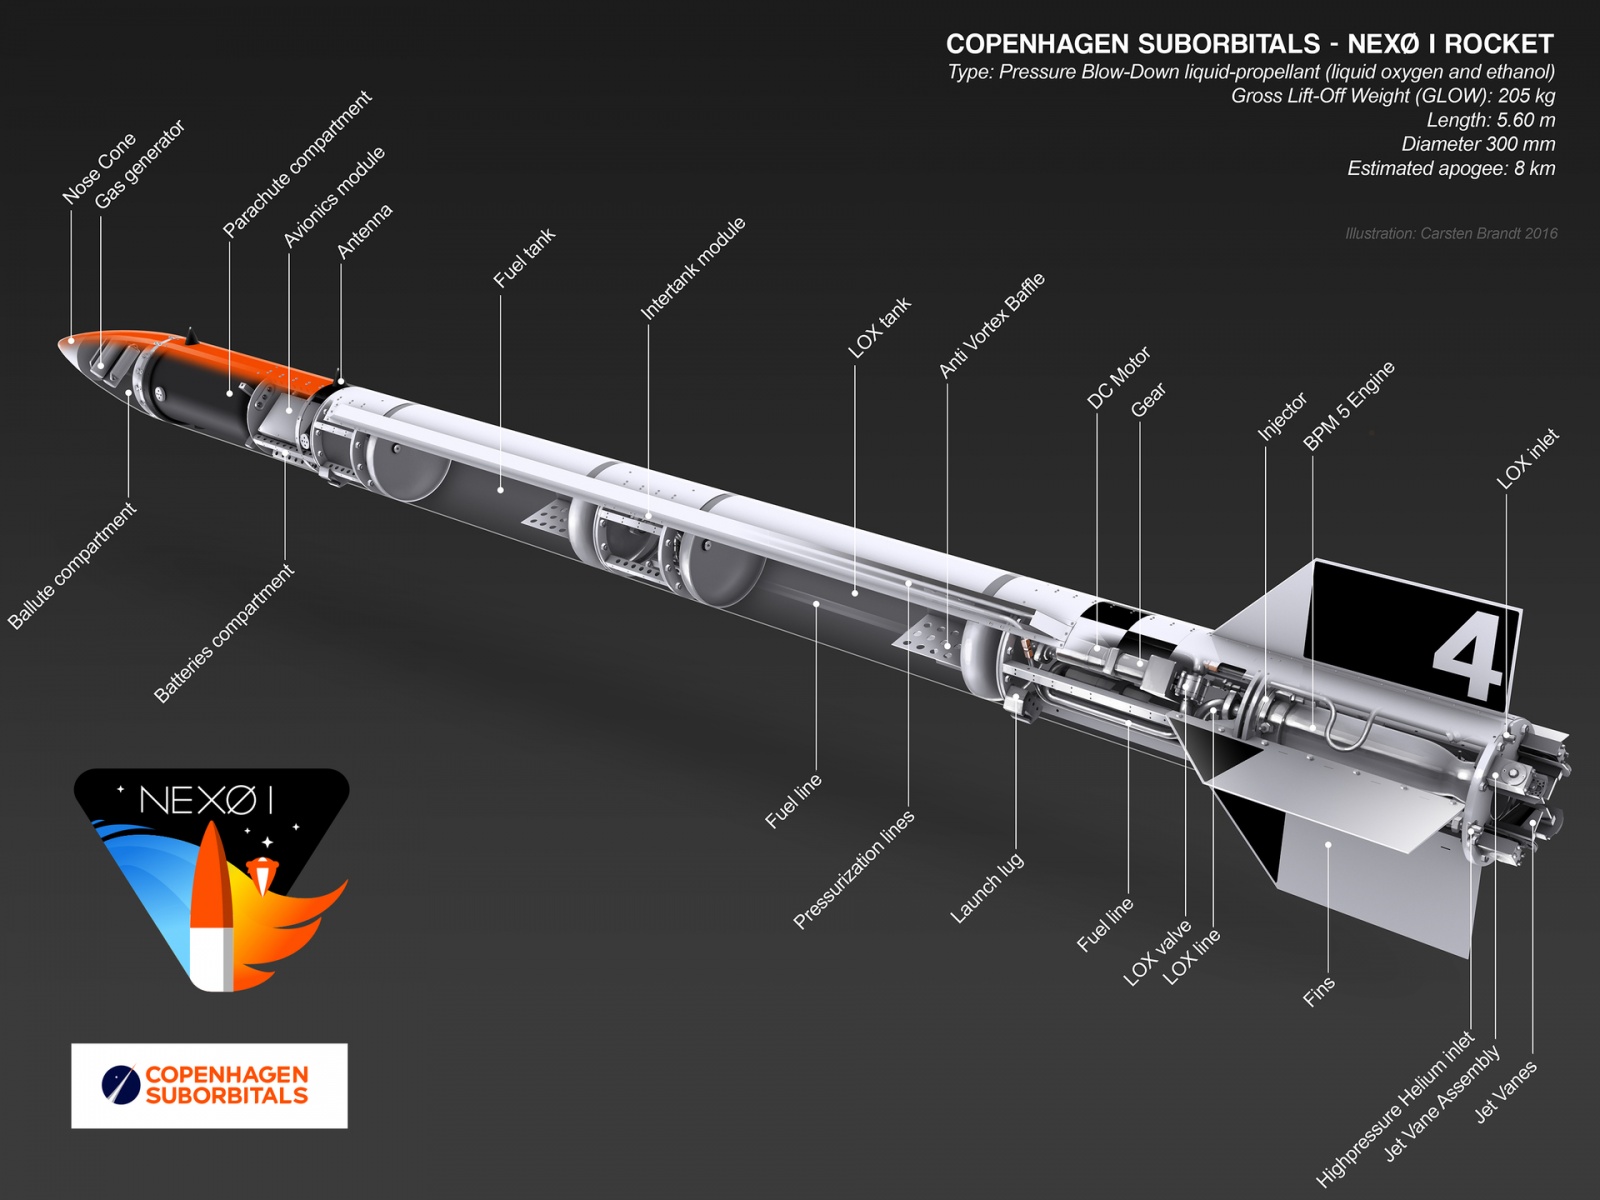 [Обновлено] Copenhagen Suborbitals сегодня запустила очередную суборбитальную ракету - 3